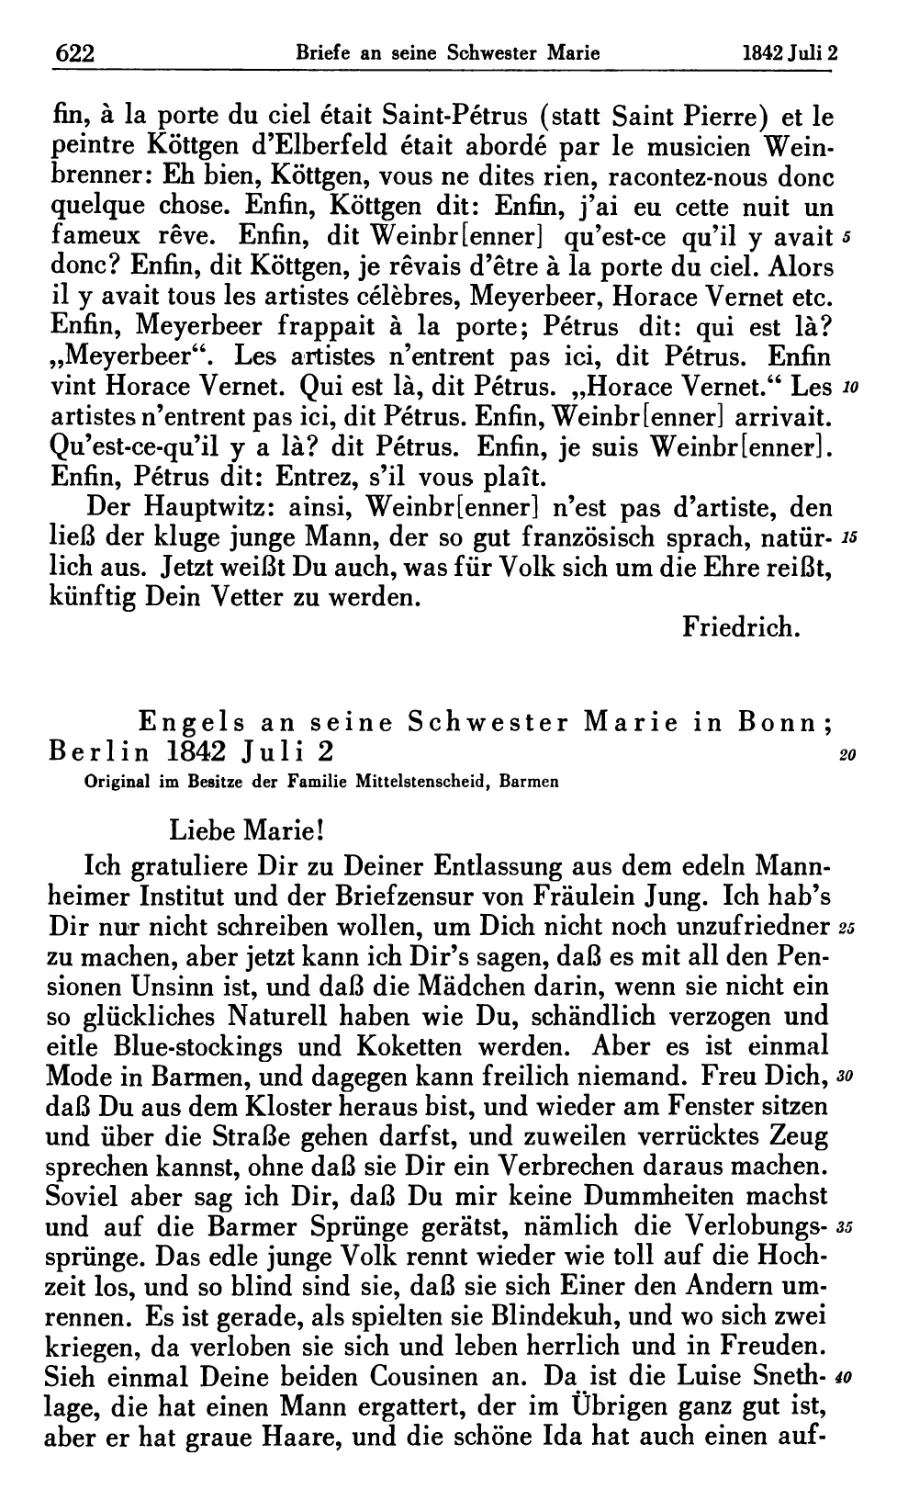 Engels an seine Schwester Marie in Bonn; Berlin 1842 Juli 2